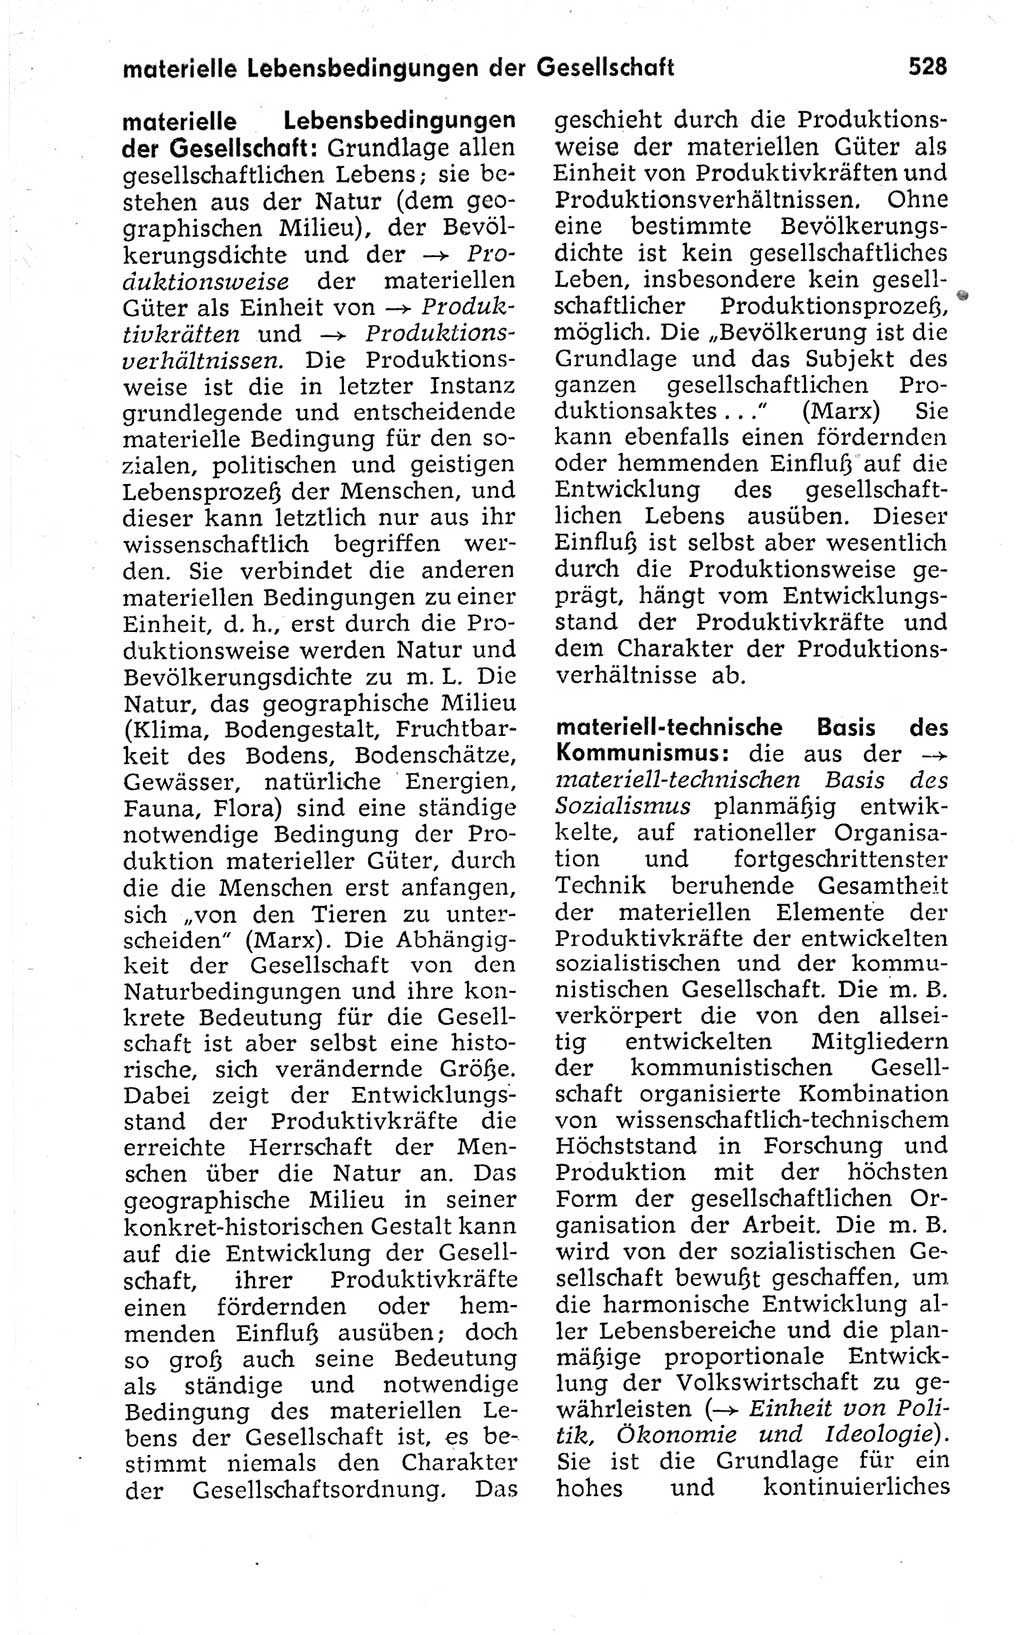 Kleines politisches Wörterbuch [Deutsche Demokratische Republik (DDR)] 1973, Seite 528 (Kl. pol. Wb. DDR 1973, S. 528)